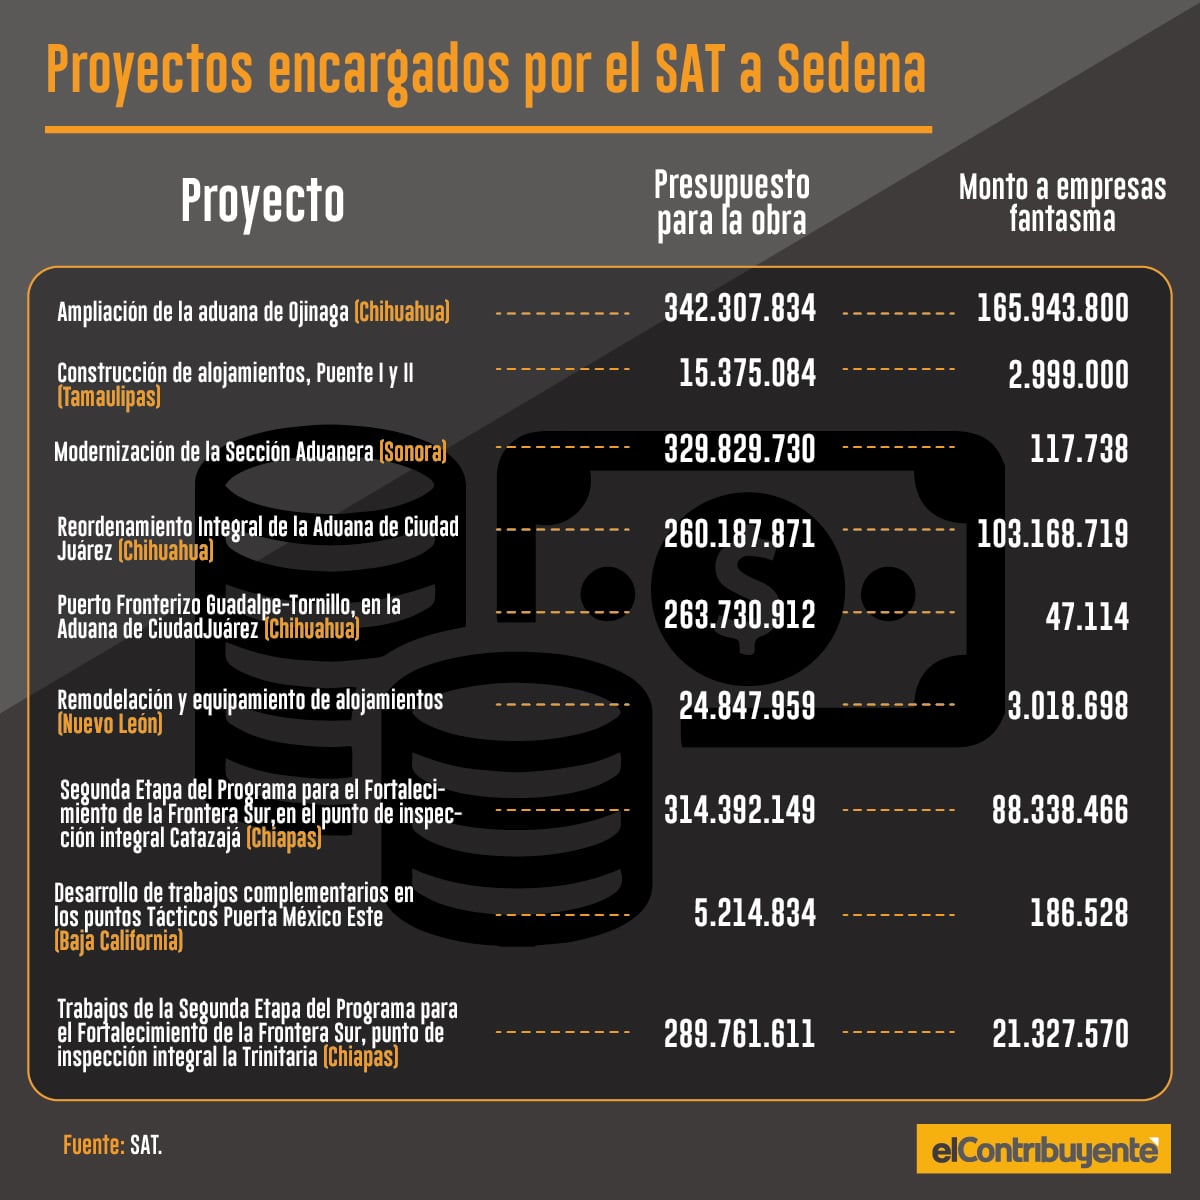 proyectos-SAT-sedena